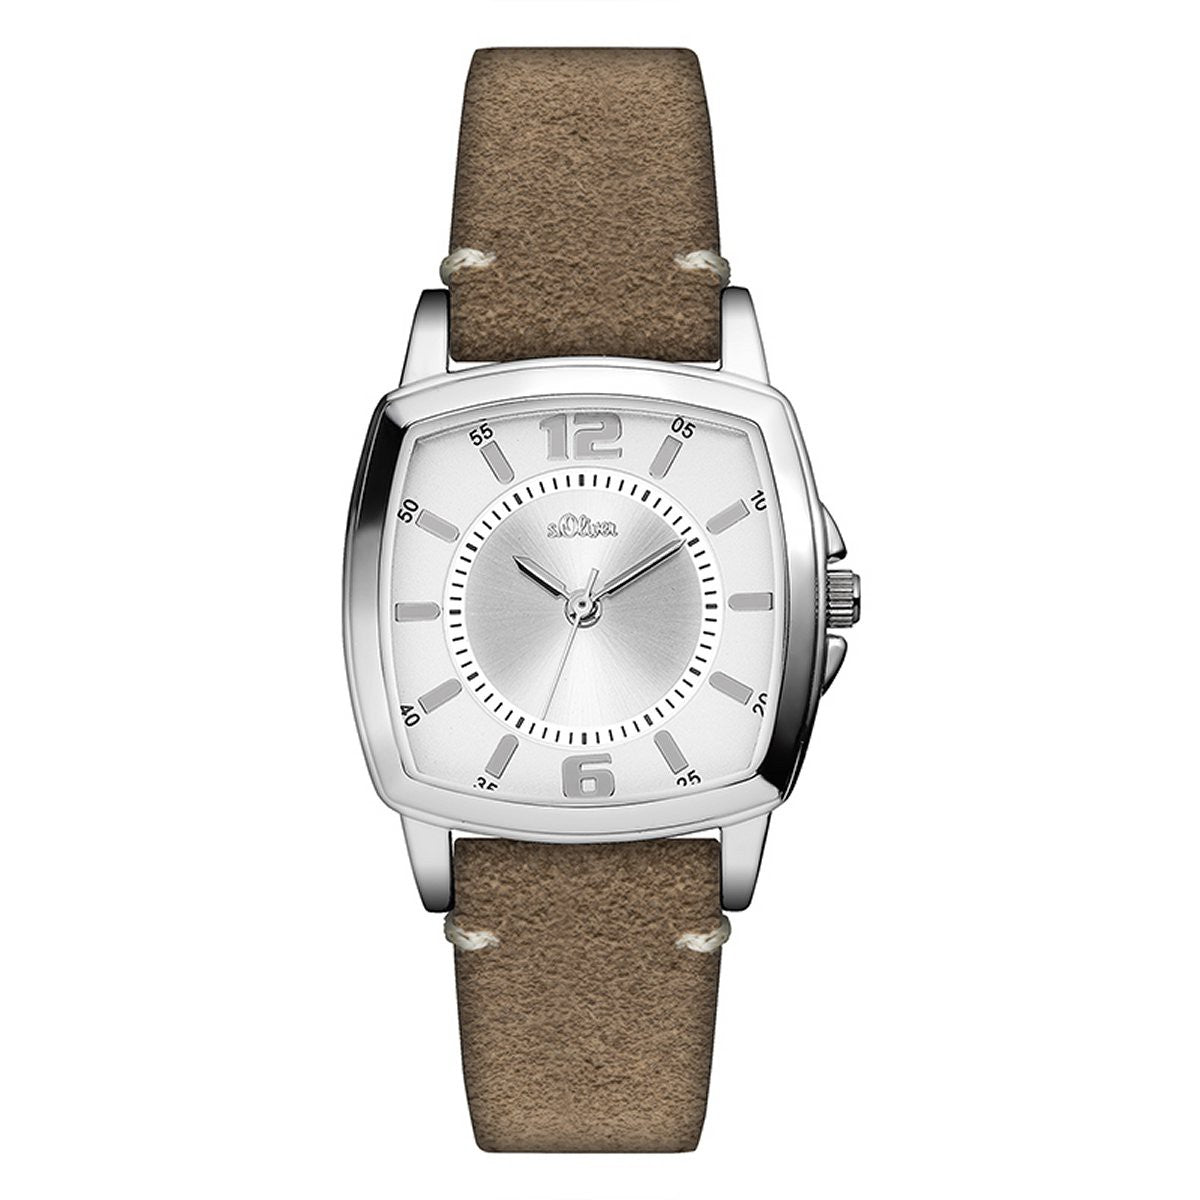 S Oliver Damen Uhr Armbanduhr Leder So 3247 Lq Preiswert24